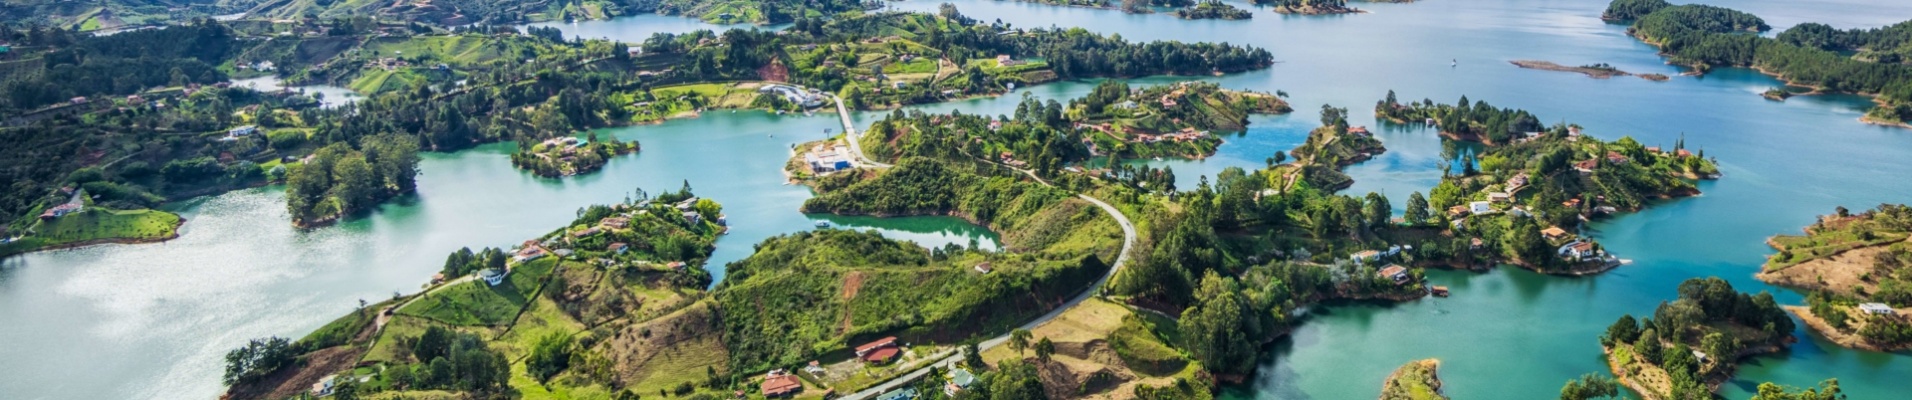 vue-lac-panoramique-penol-guatape-colombie